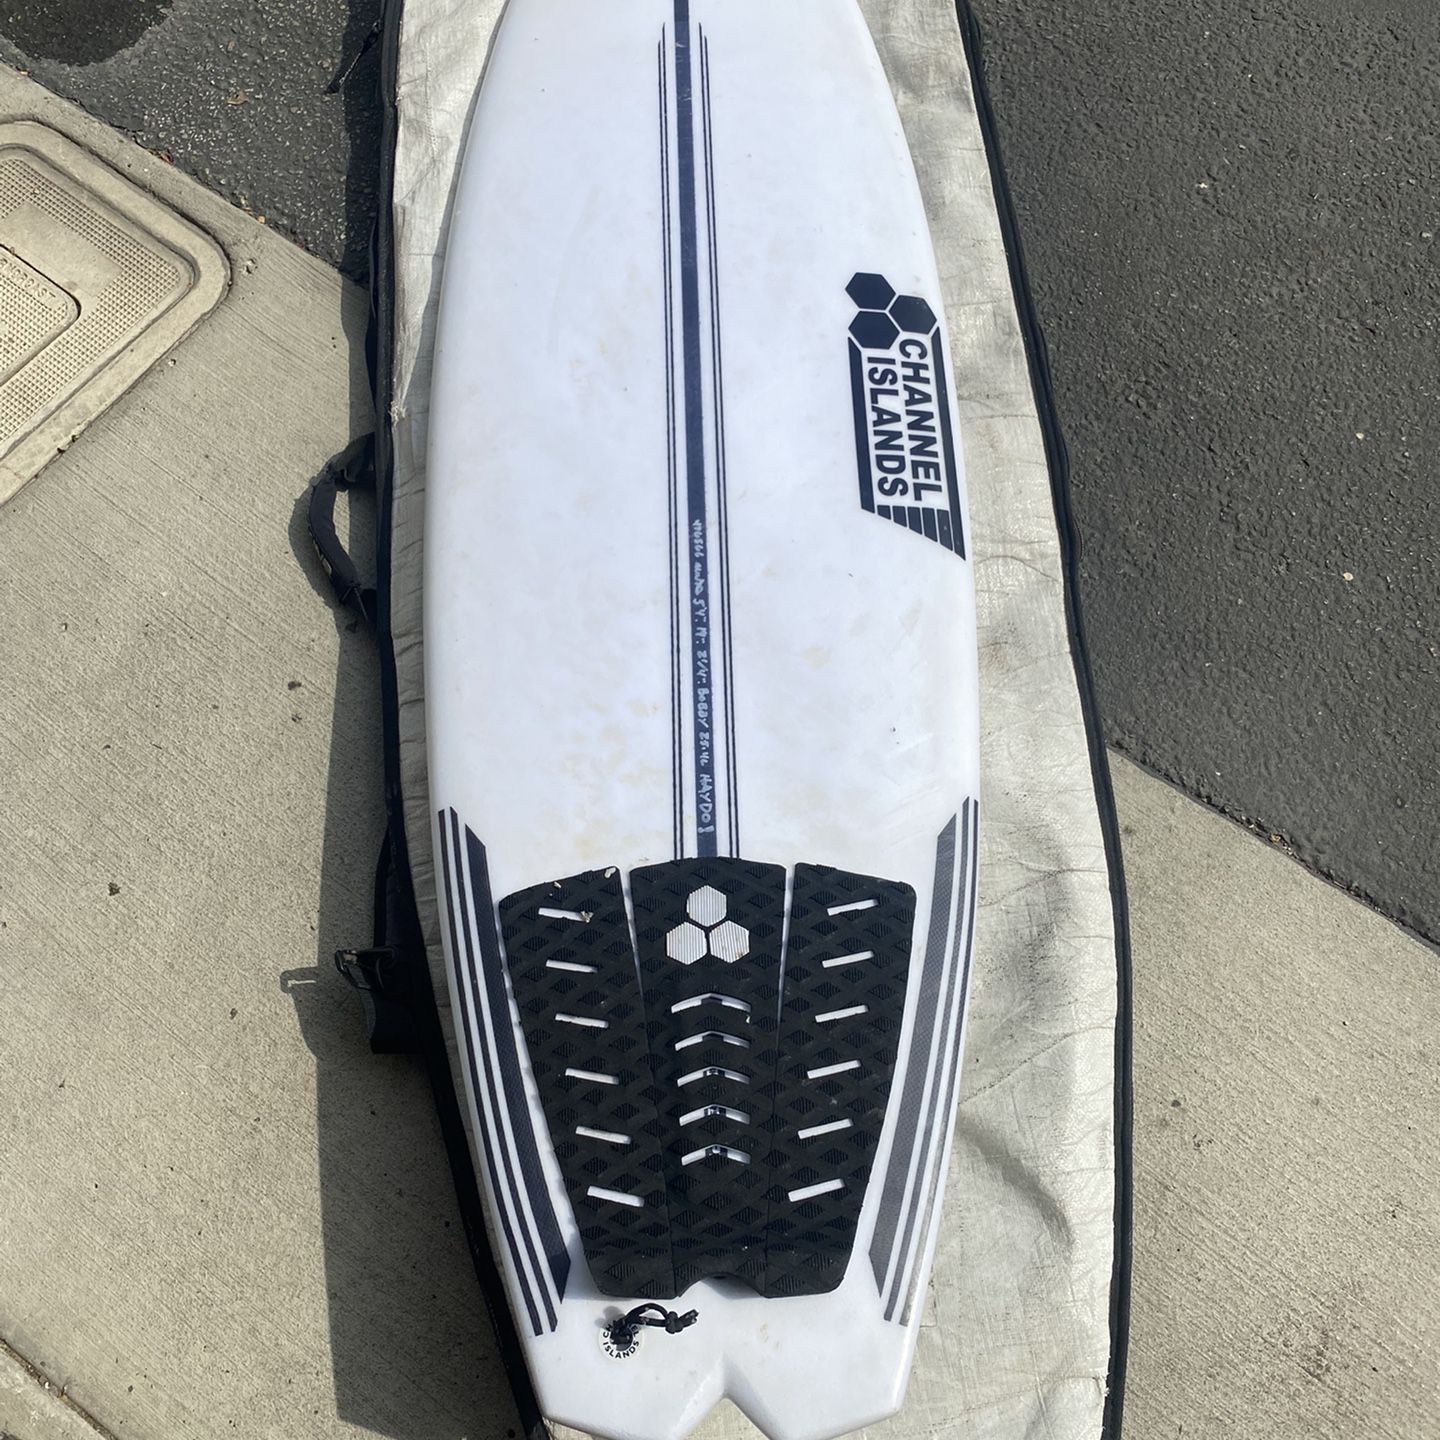 Channel Islands Surfboard for Sale in Santa Barbara, CA - OfferUp